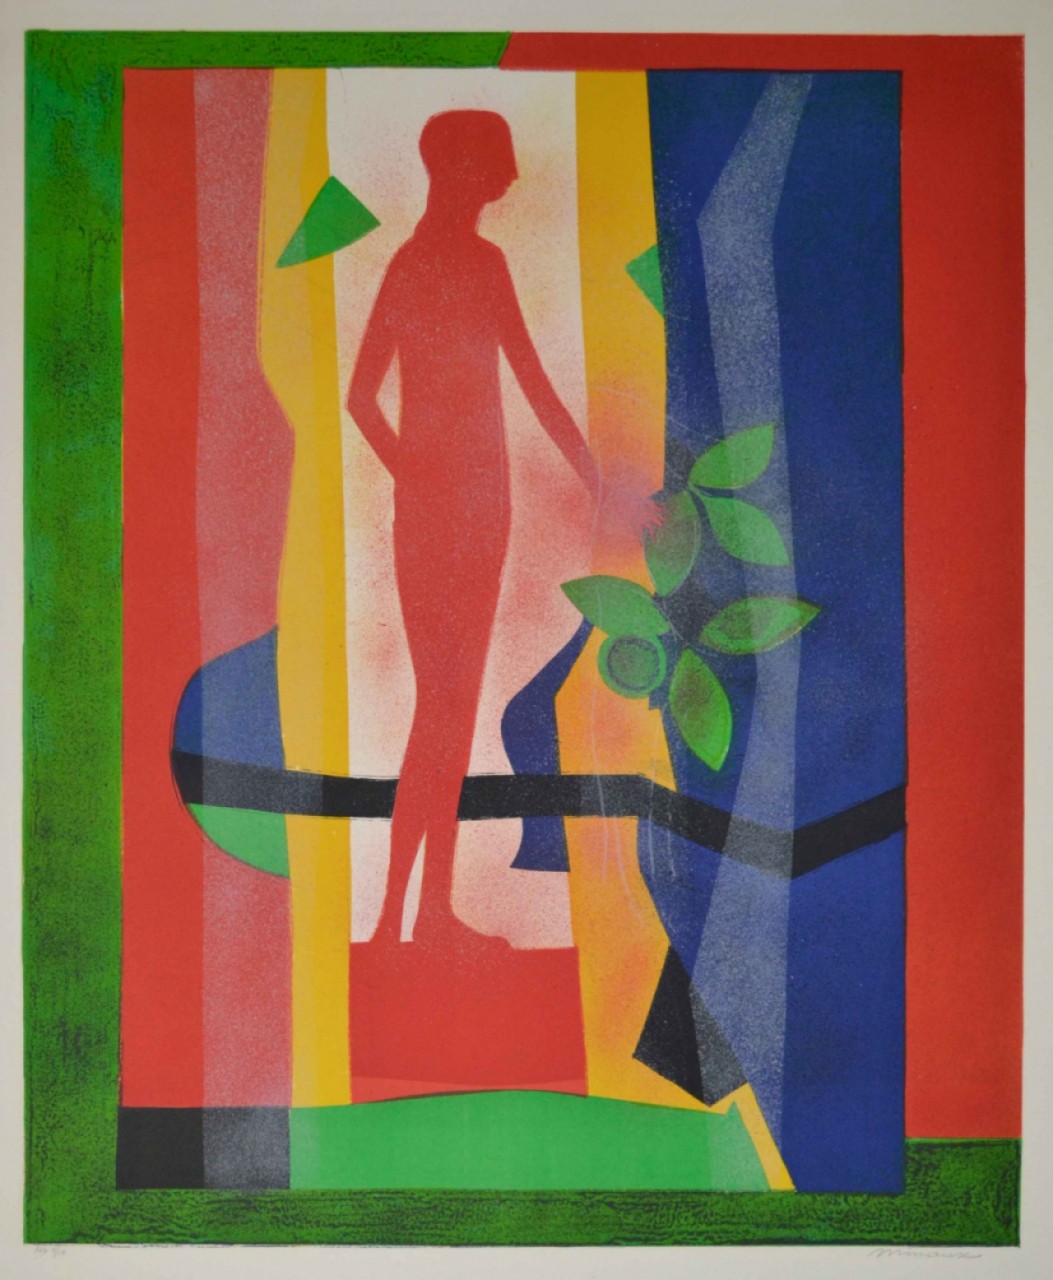 MIME MARCEAU silhouette dans composition colorée